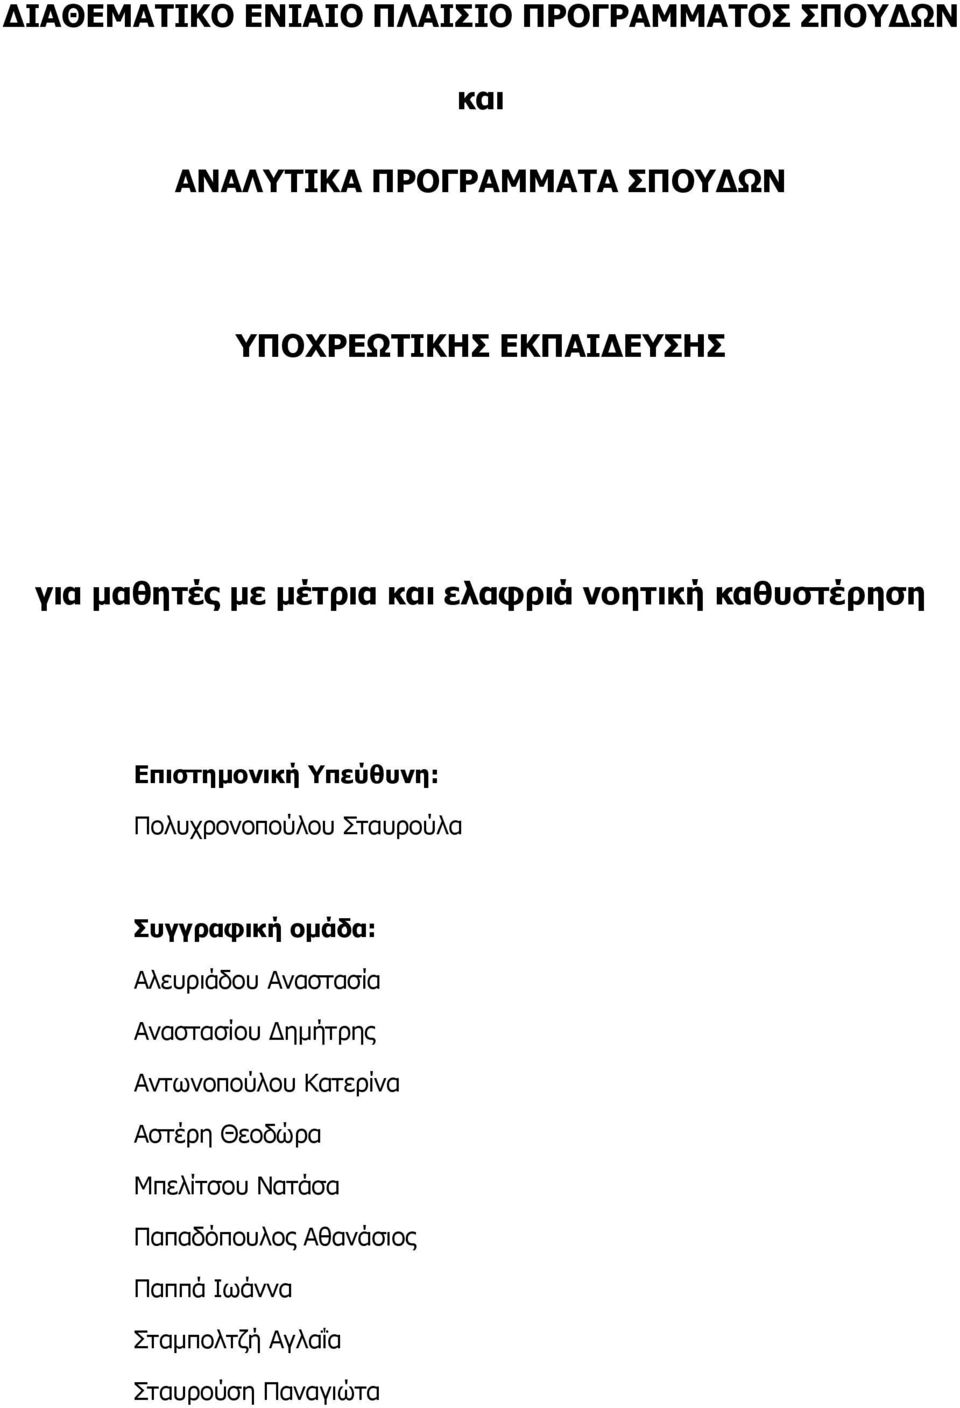 Σταυρούλα Συγγραφική ομάδα: λευριάδου ναστασία ναστασίου Δημήτρης ντωνοπούλου Κατερίνα στέρη